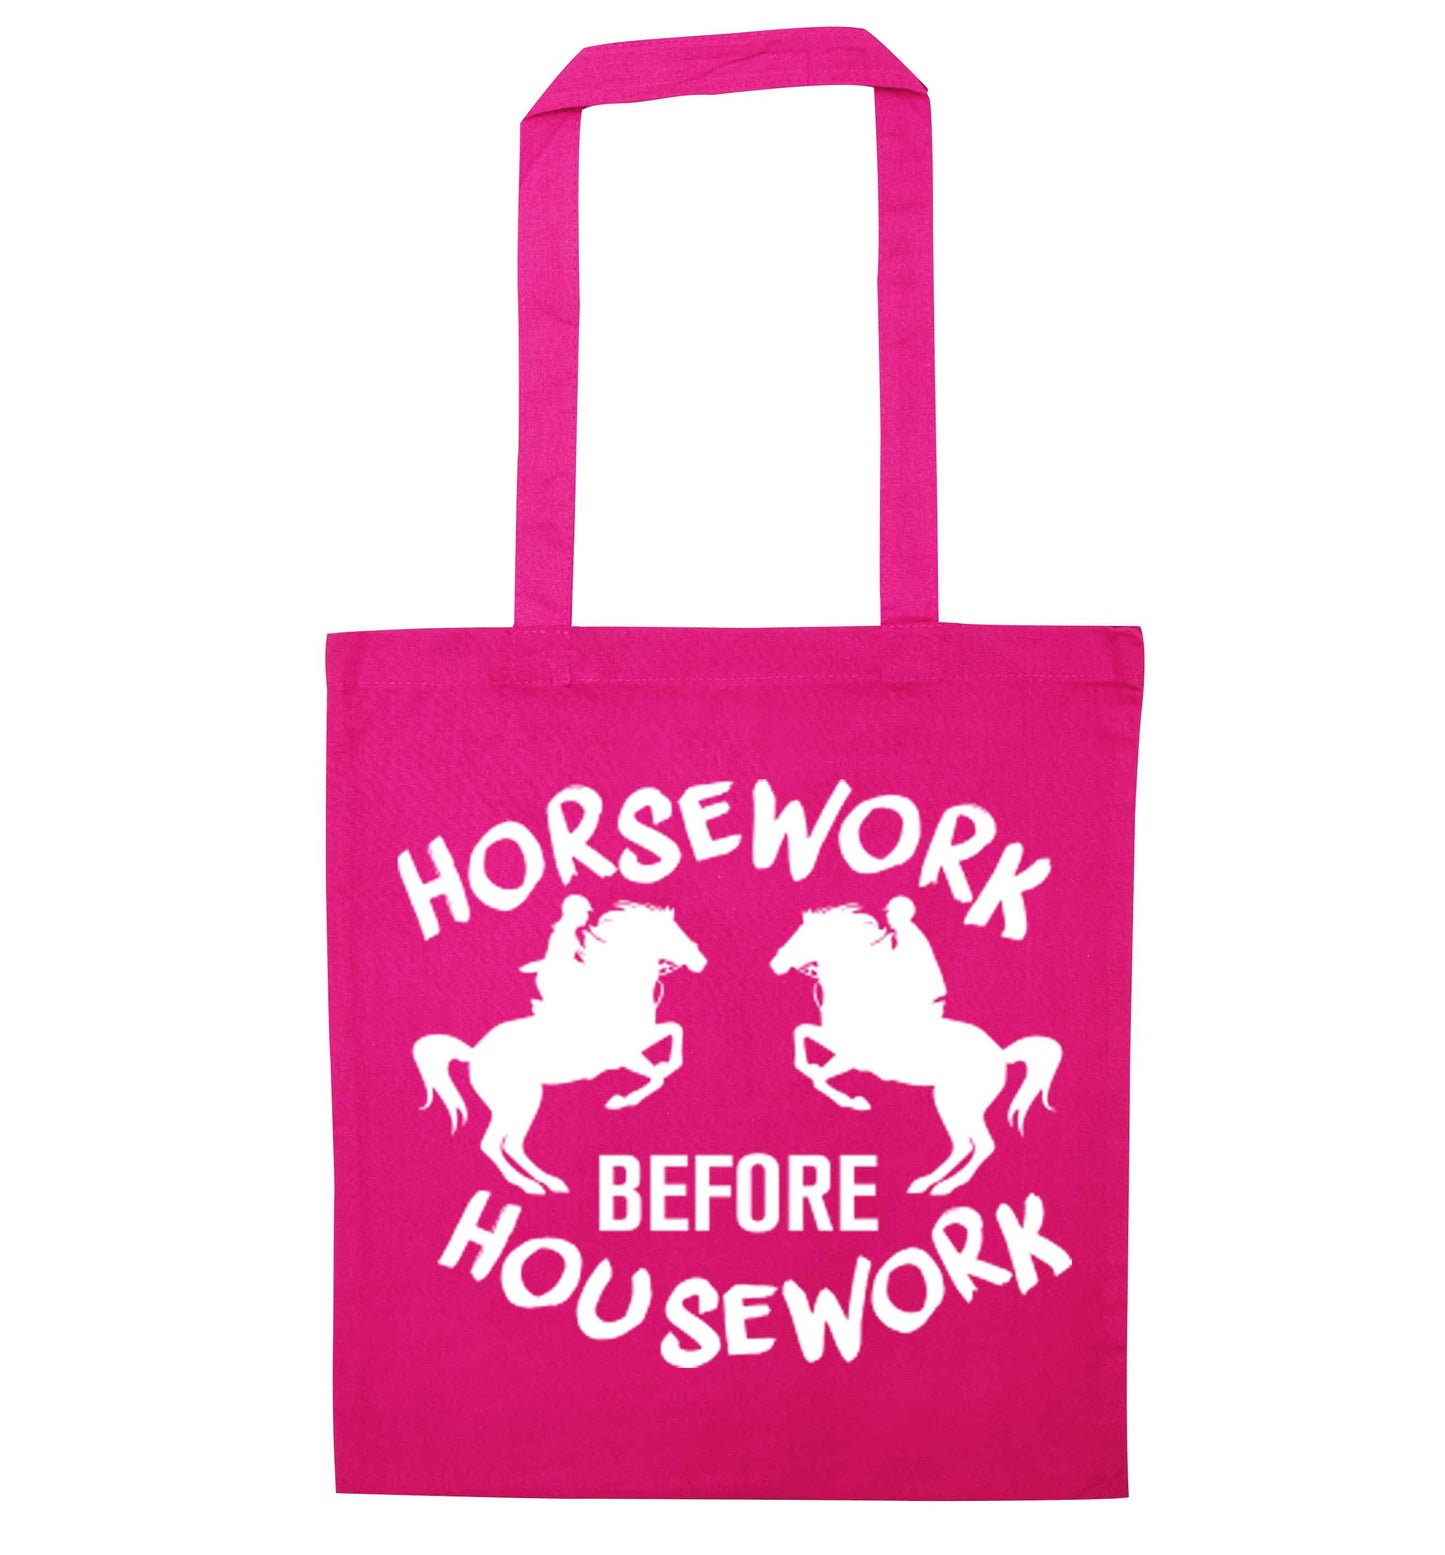 Horsework before housework pink tote bag